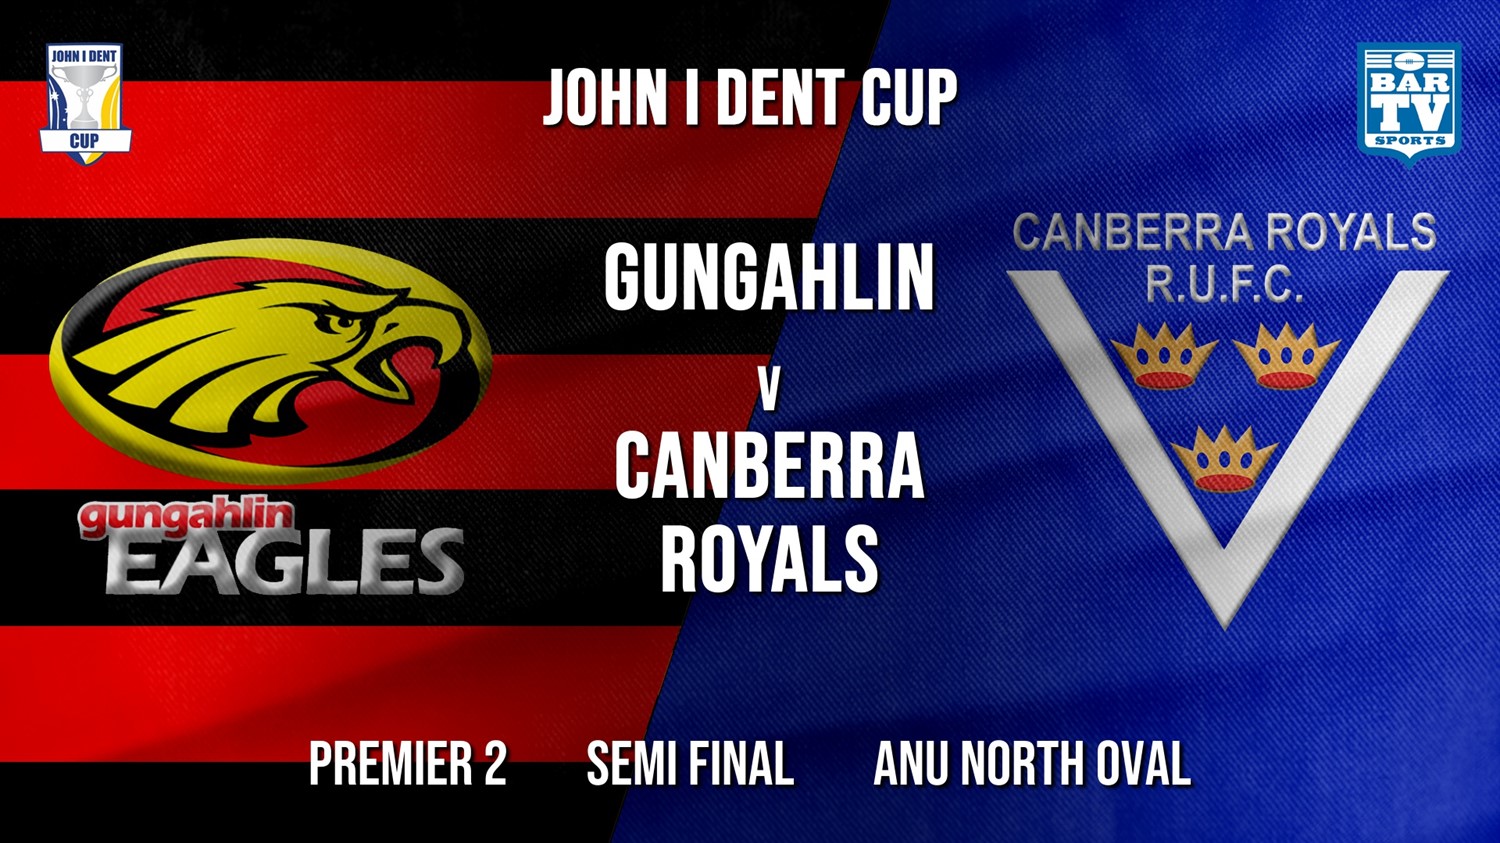 John I Dent Semi Final - Premier 2 - Gungahlin Eagles v Canberra Royals Minigame Slate Image